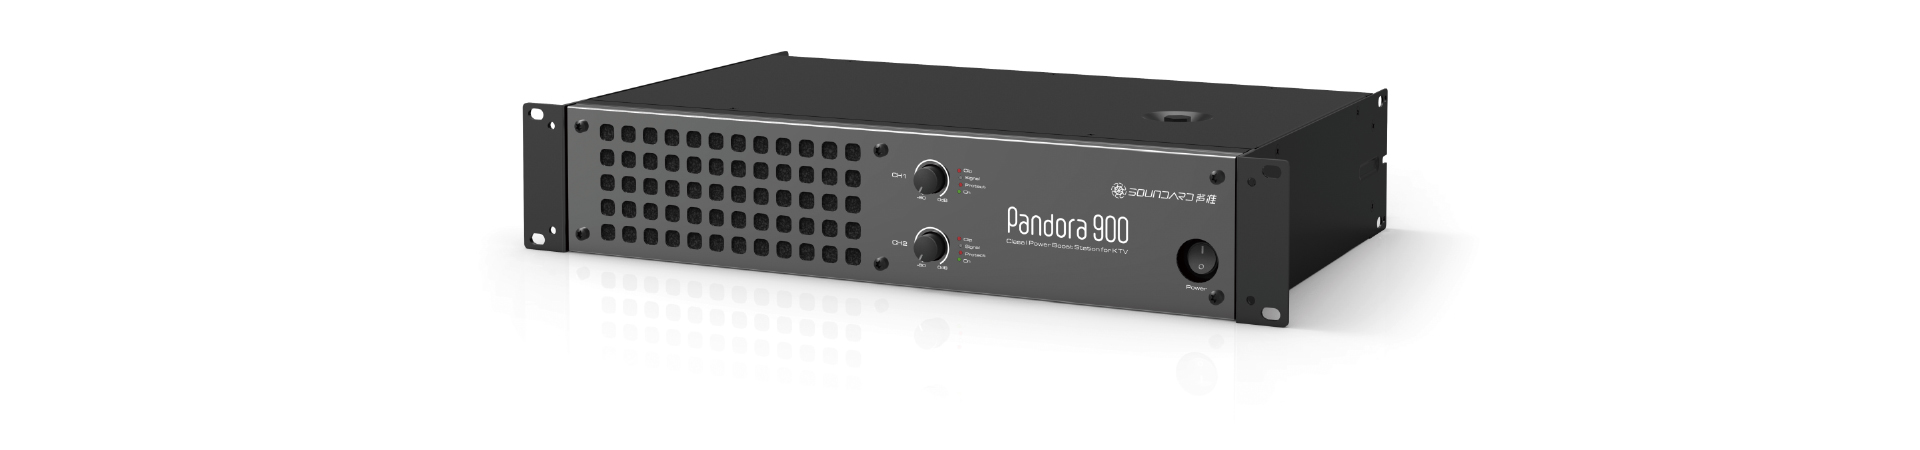 pandora900